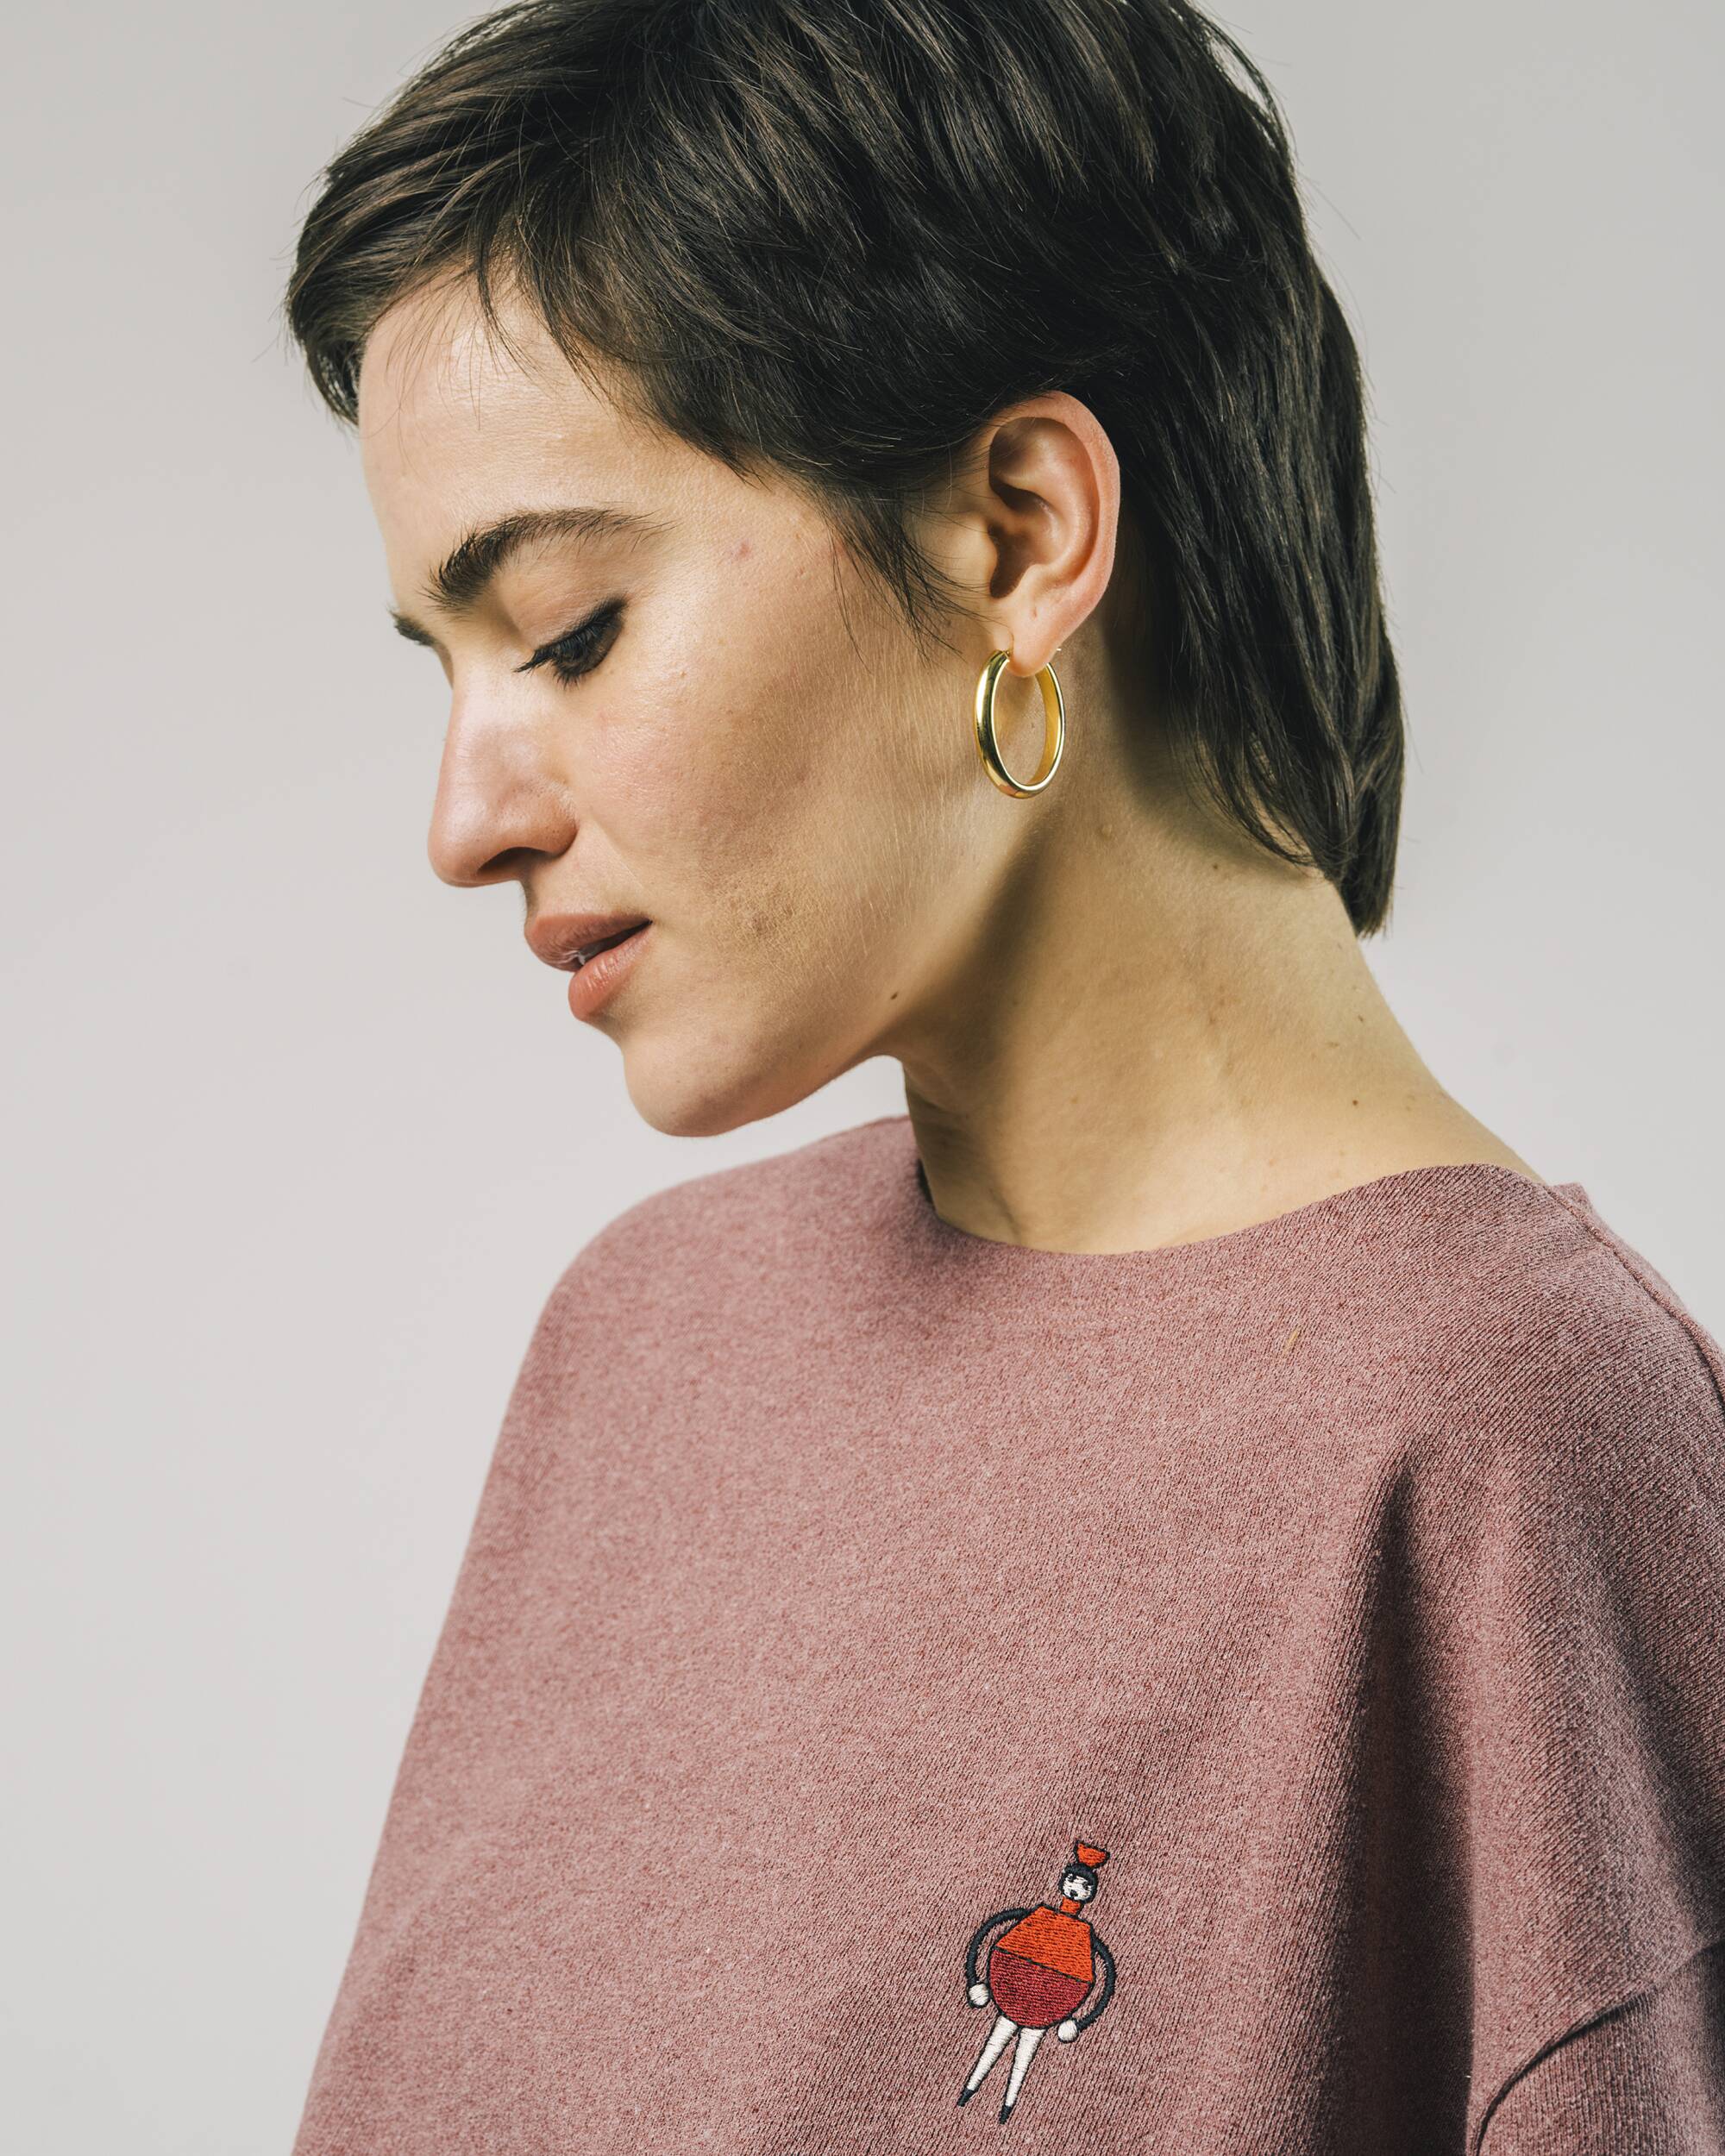 Oversized, boxy Sweatshirt "Emily" mit 3/4-Ärmeln in rot melliert aus 100% Bio - Baumwolle von Brava Fabrics